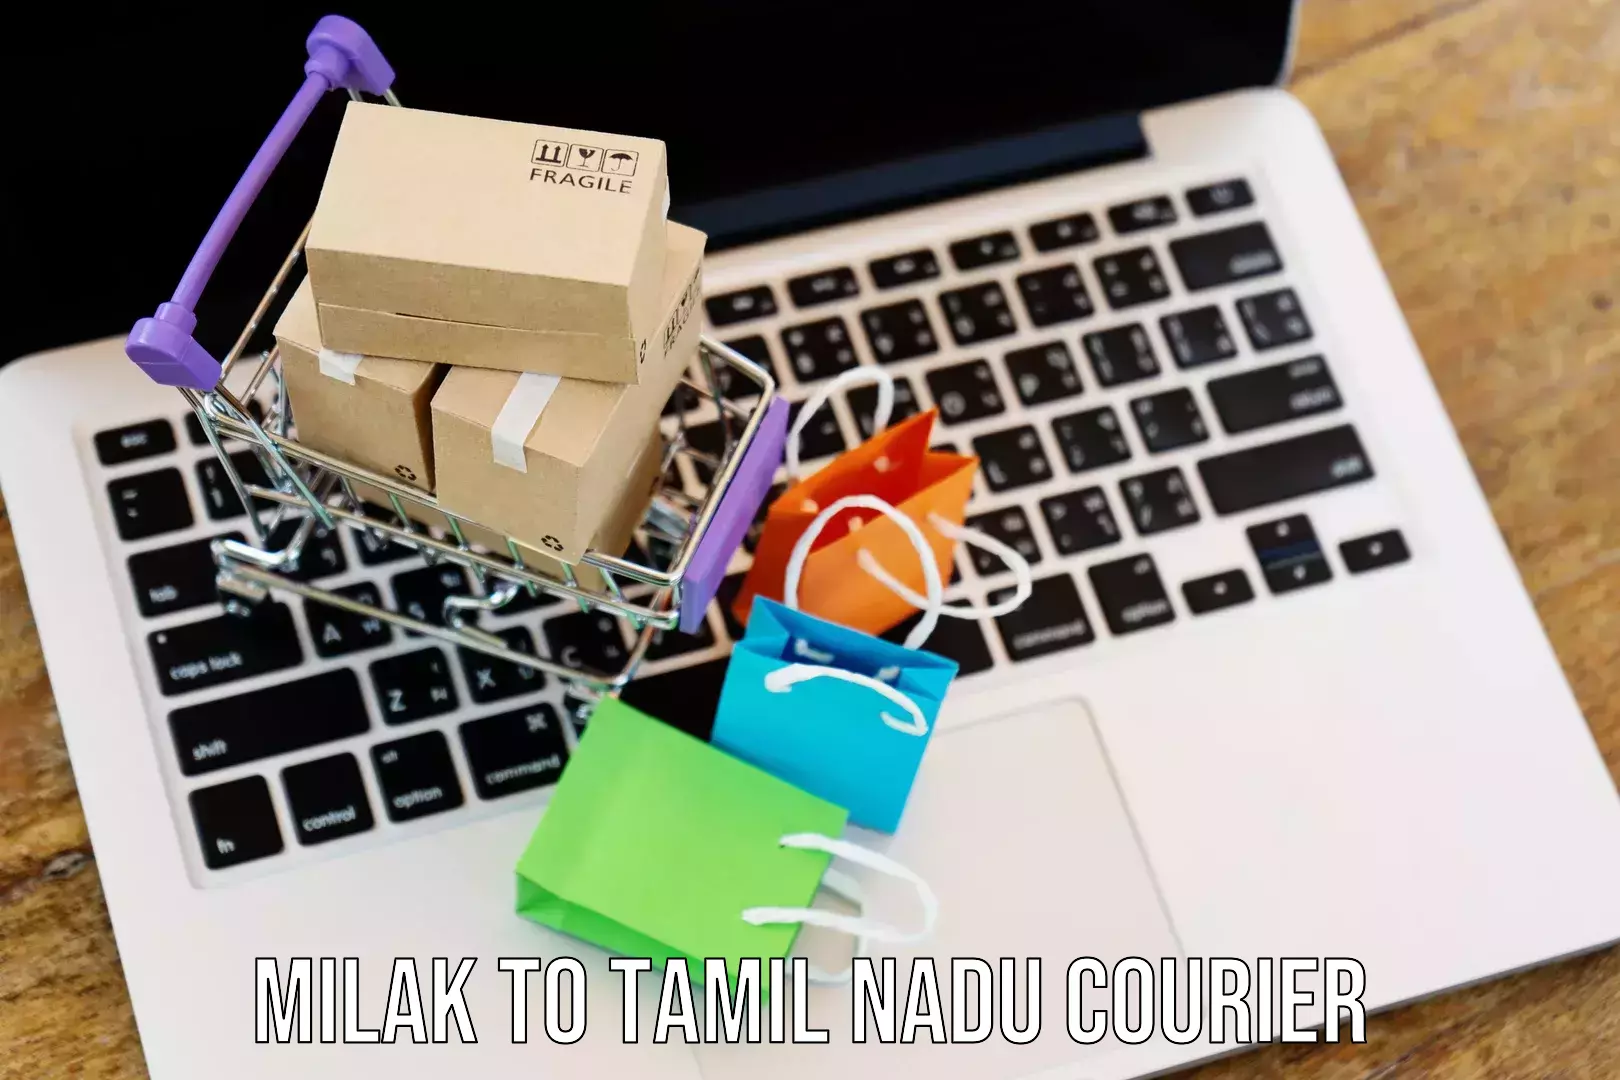 Custom courier packaging Milak to Tamil Nadu